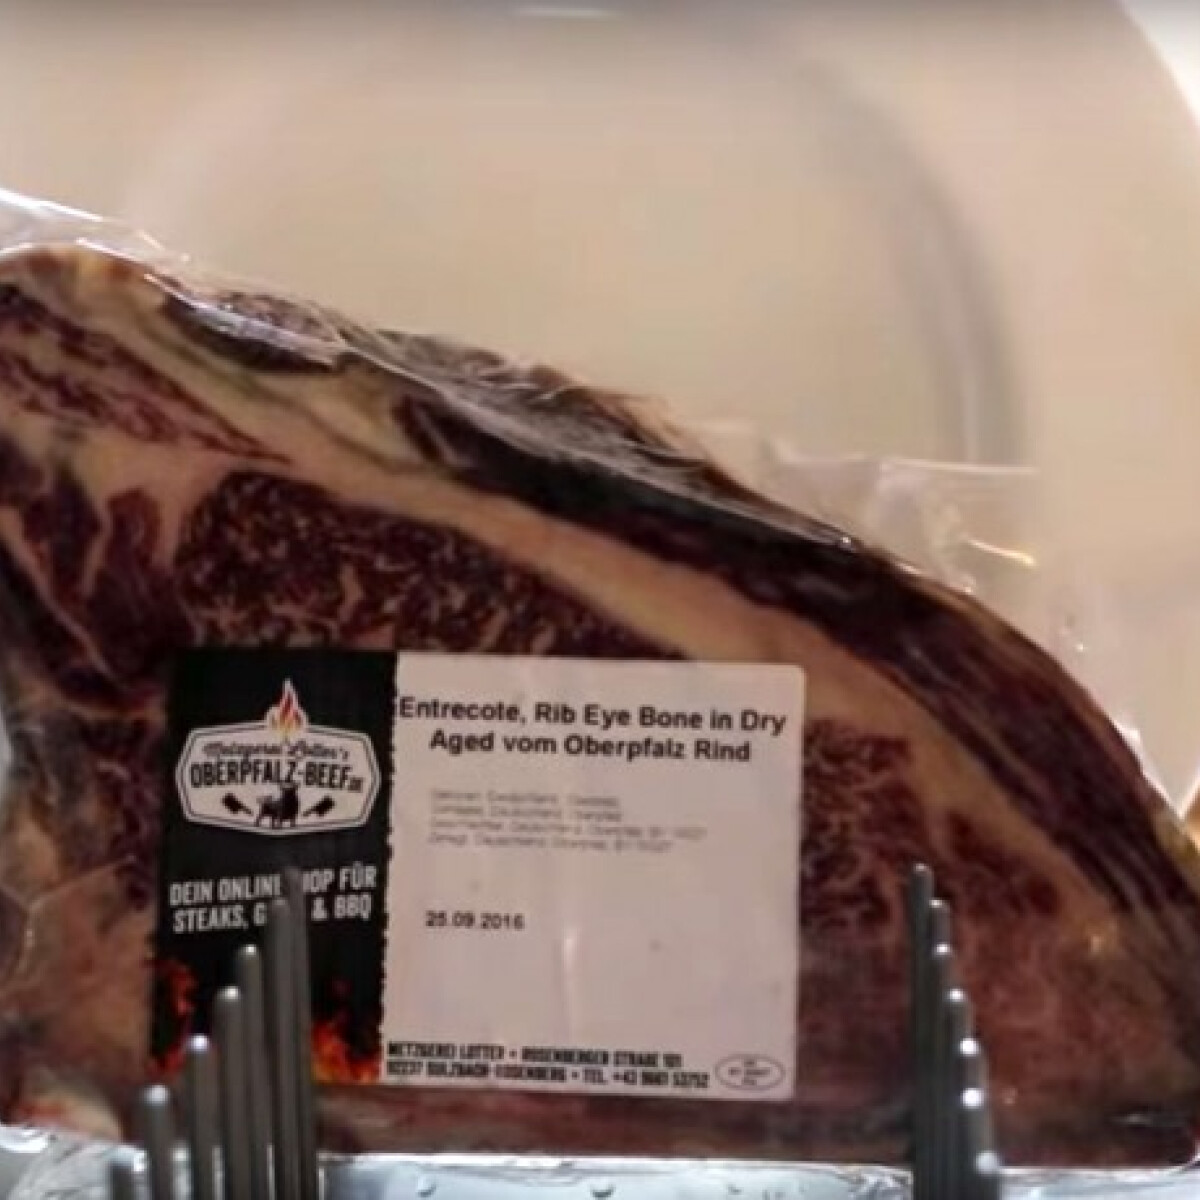 Itt egy olcsó recept arra, hogyan lehet tökéletes a steaked a mosogatógépben is